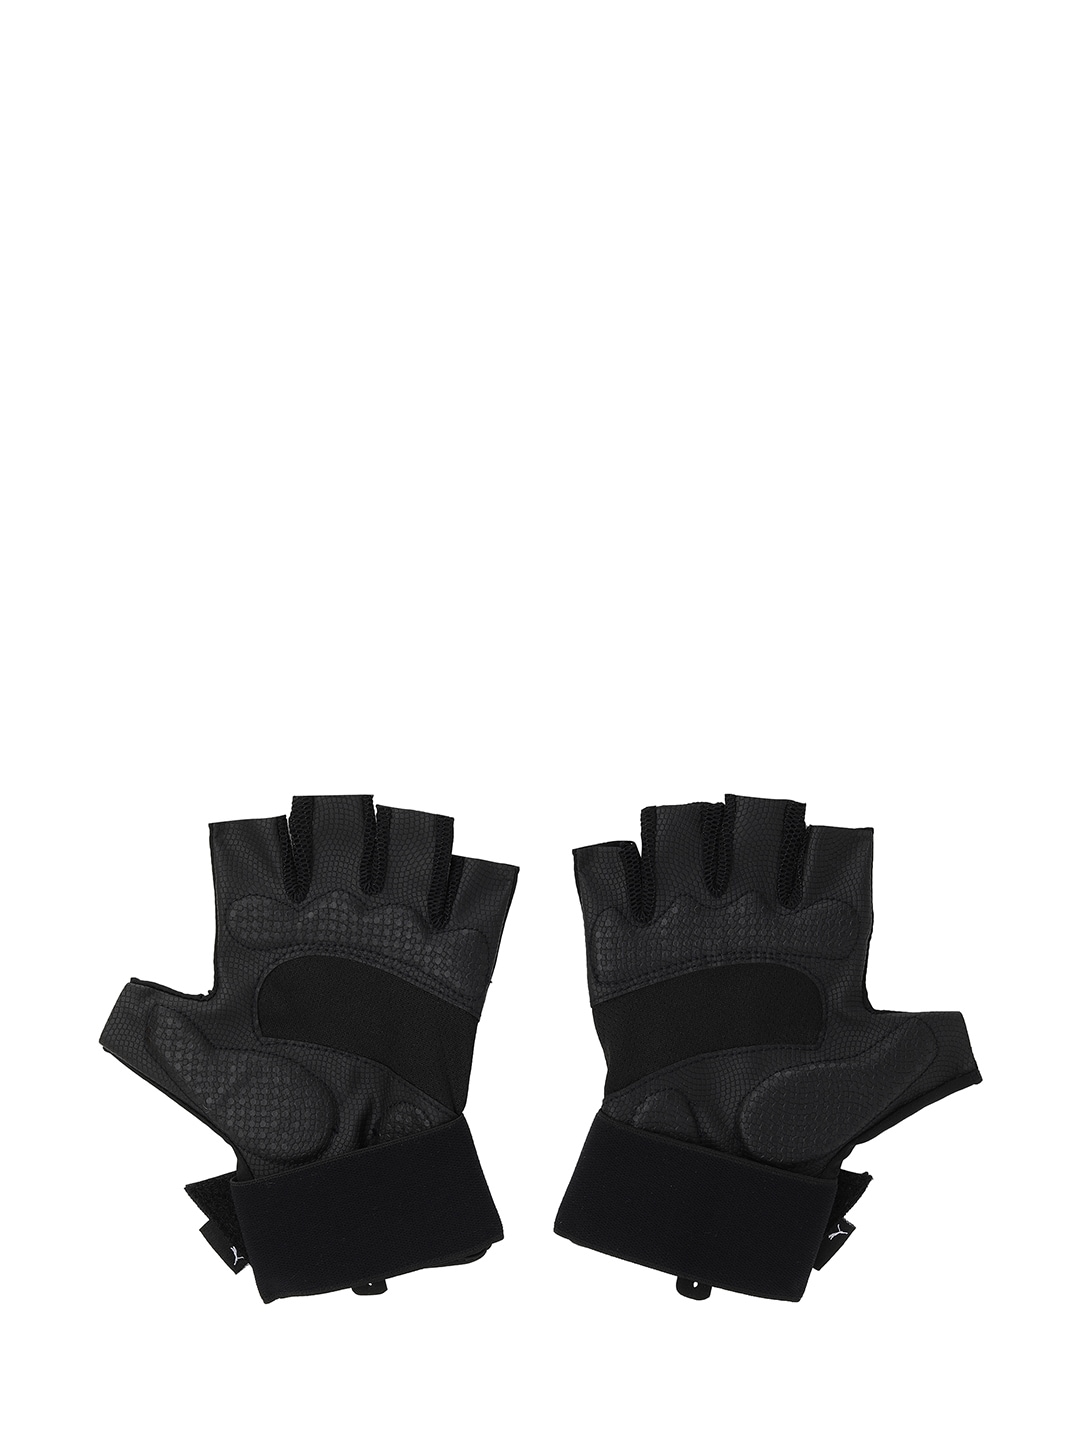 Puma Unisex Black Solid One8 Premium Gloves Price in India